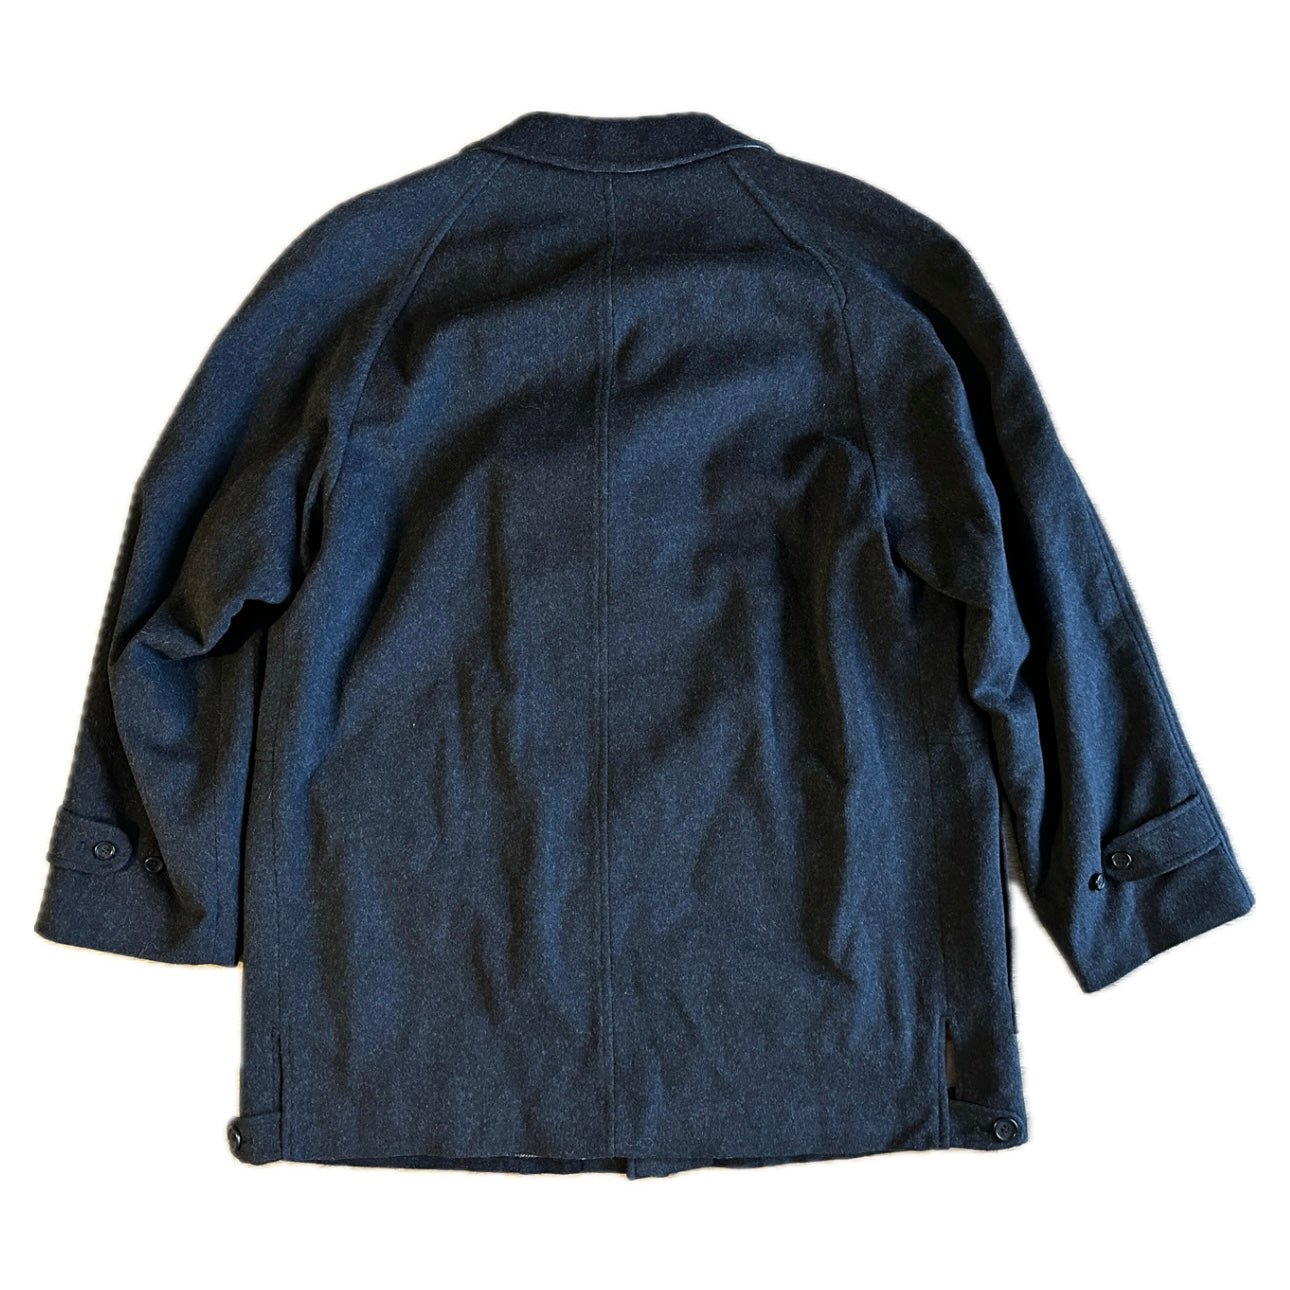 Burberrys New Woodhall Wool Coat - Deadstock - 54 / L